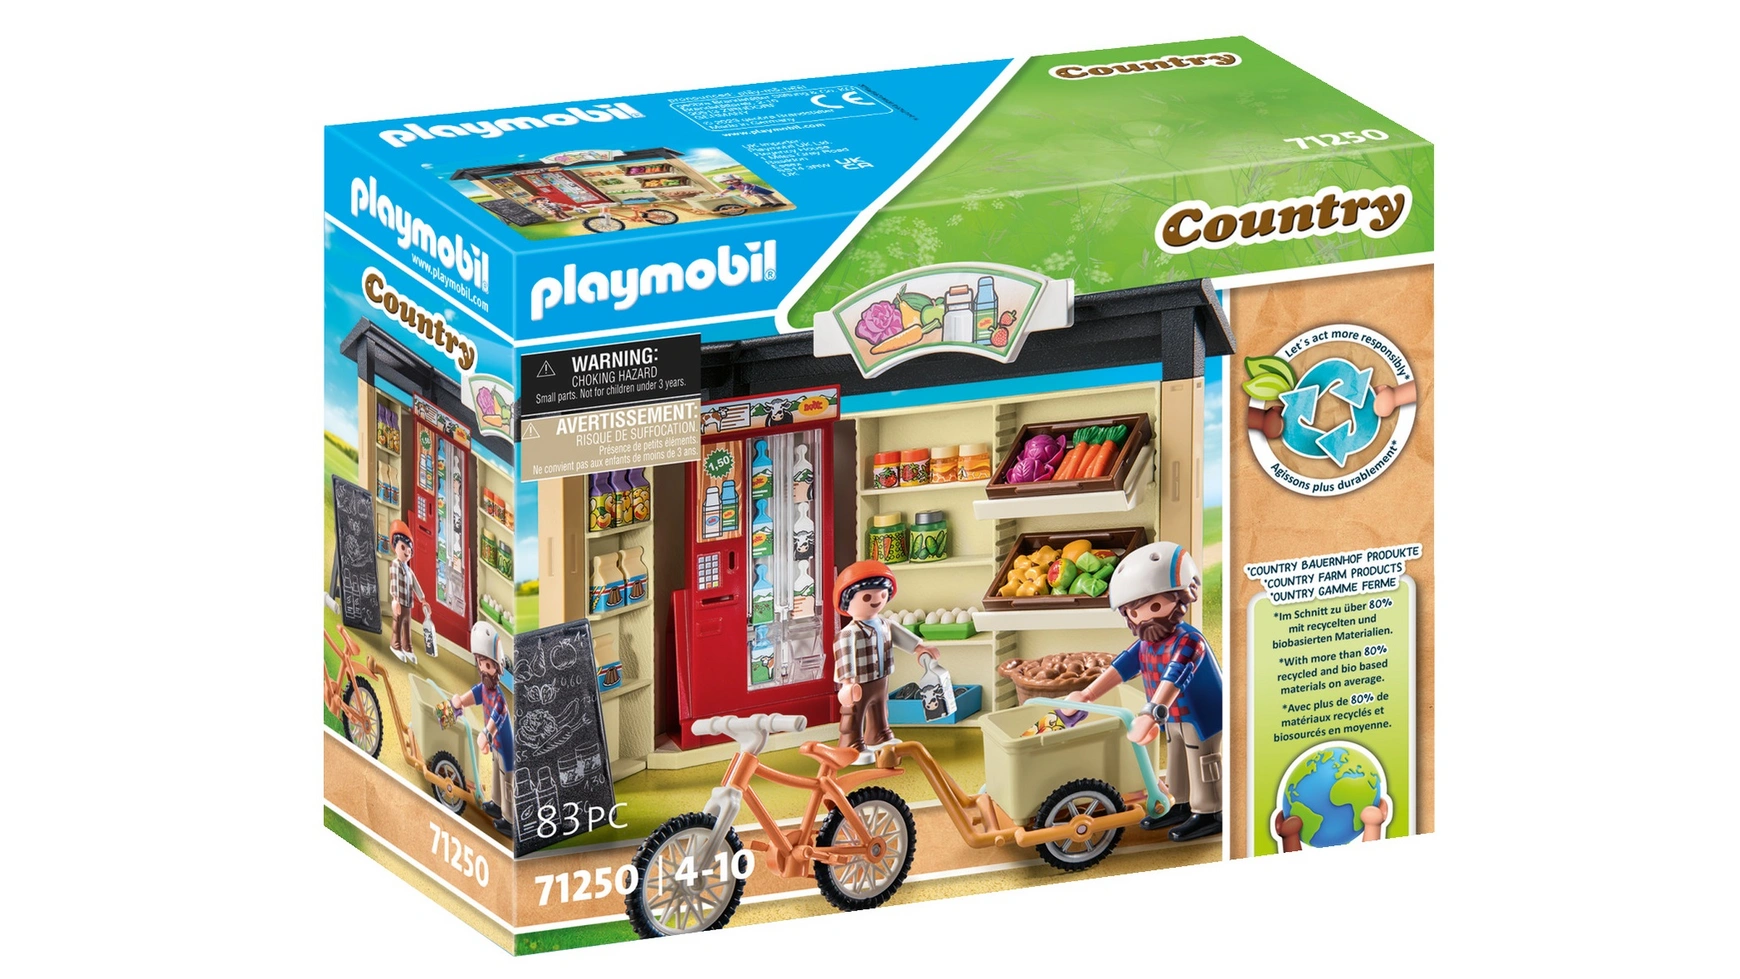 Country круглосуточный фермерский магазин Playmobil